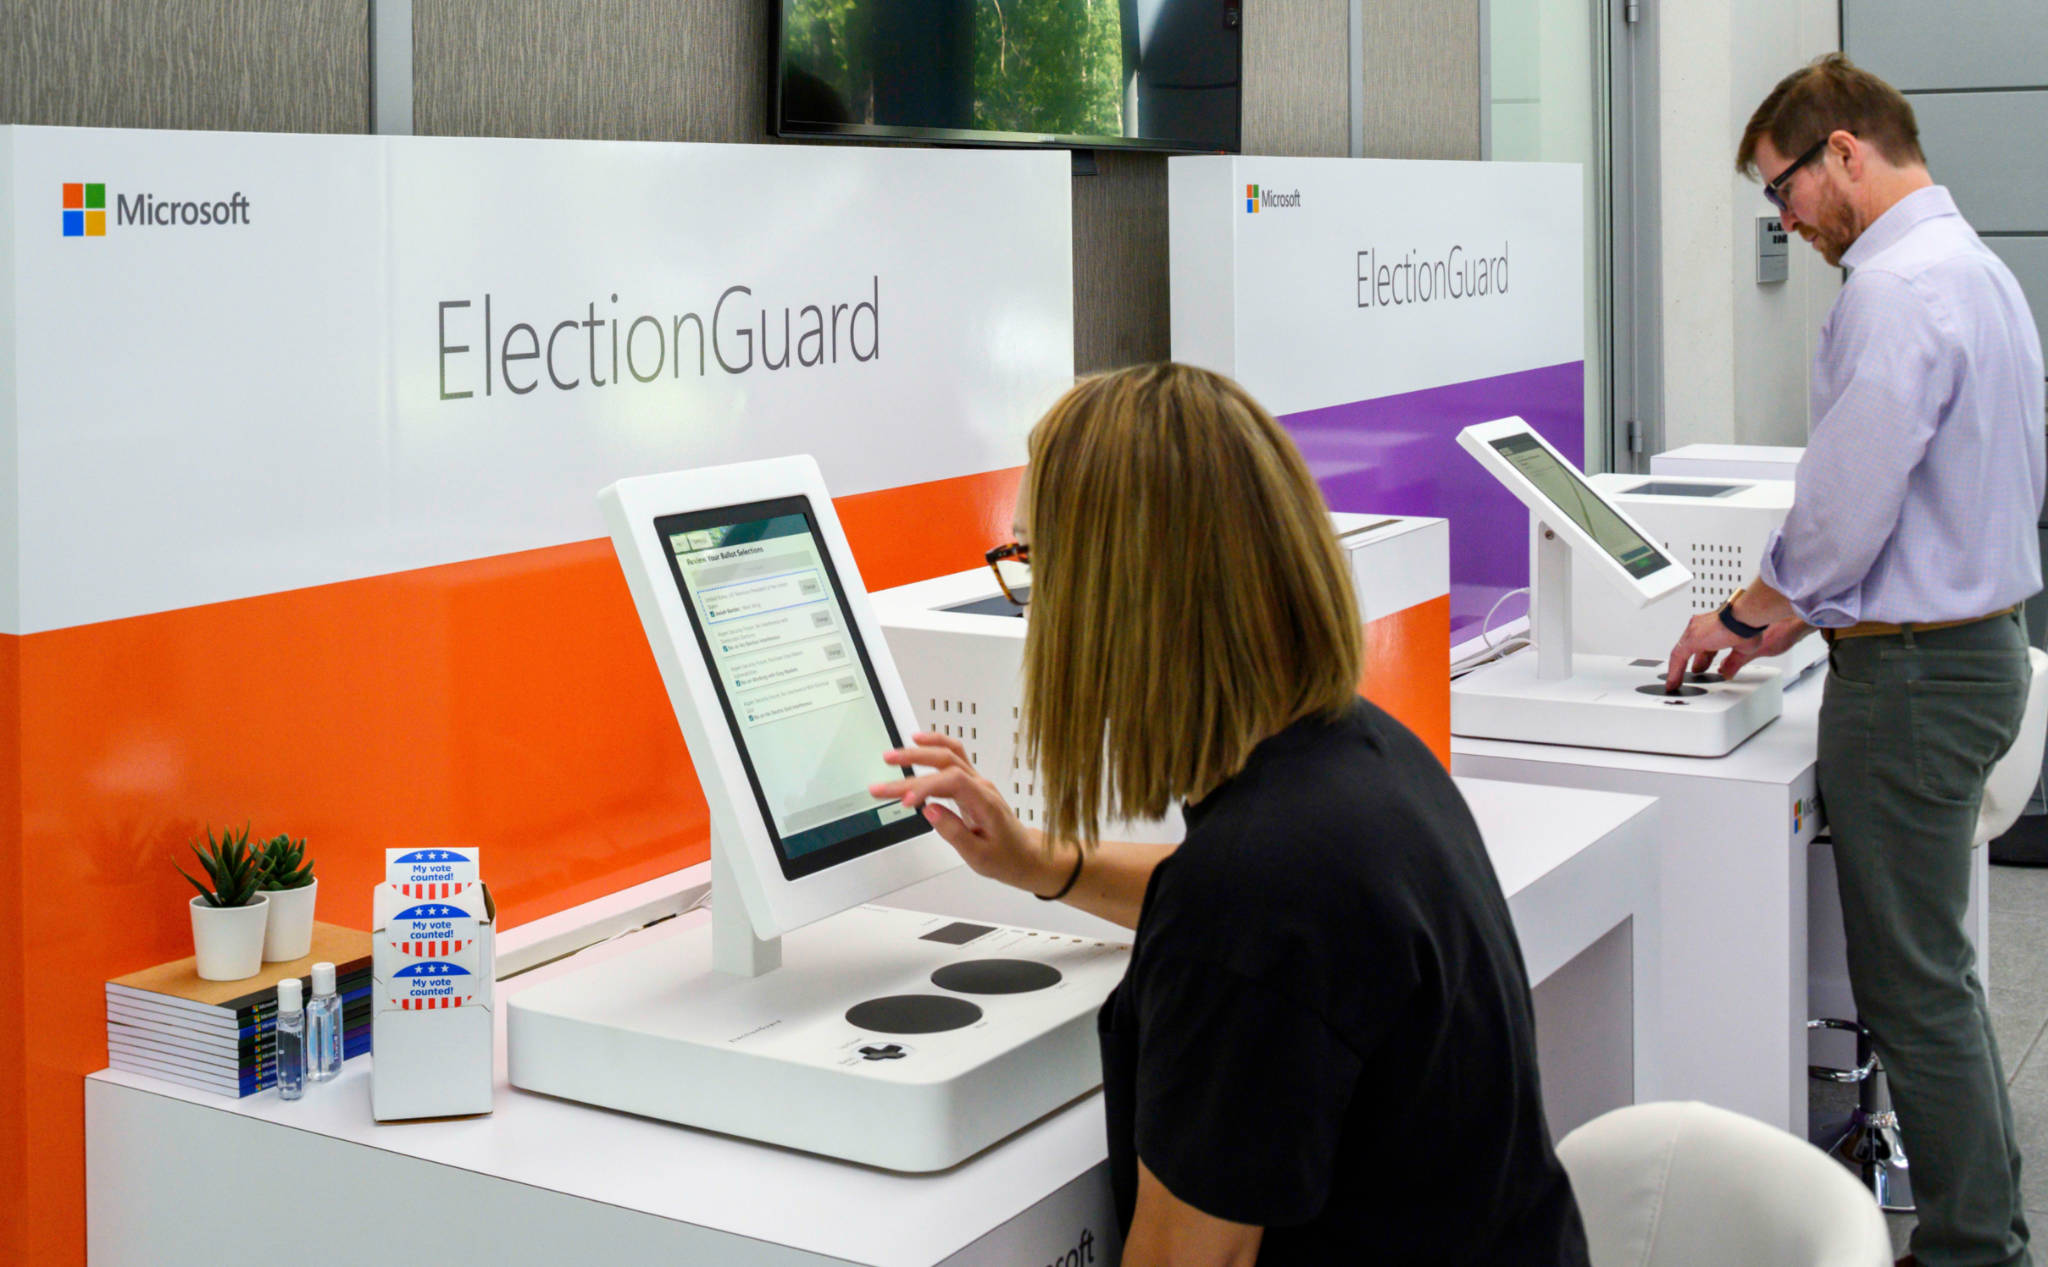 Máy bỏ phiếu sẽ không còn dễ bị hack nữa nhờ công nghệ ElectionGuard của Microsoft